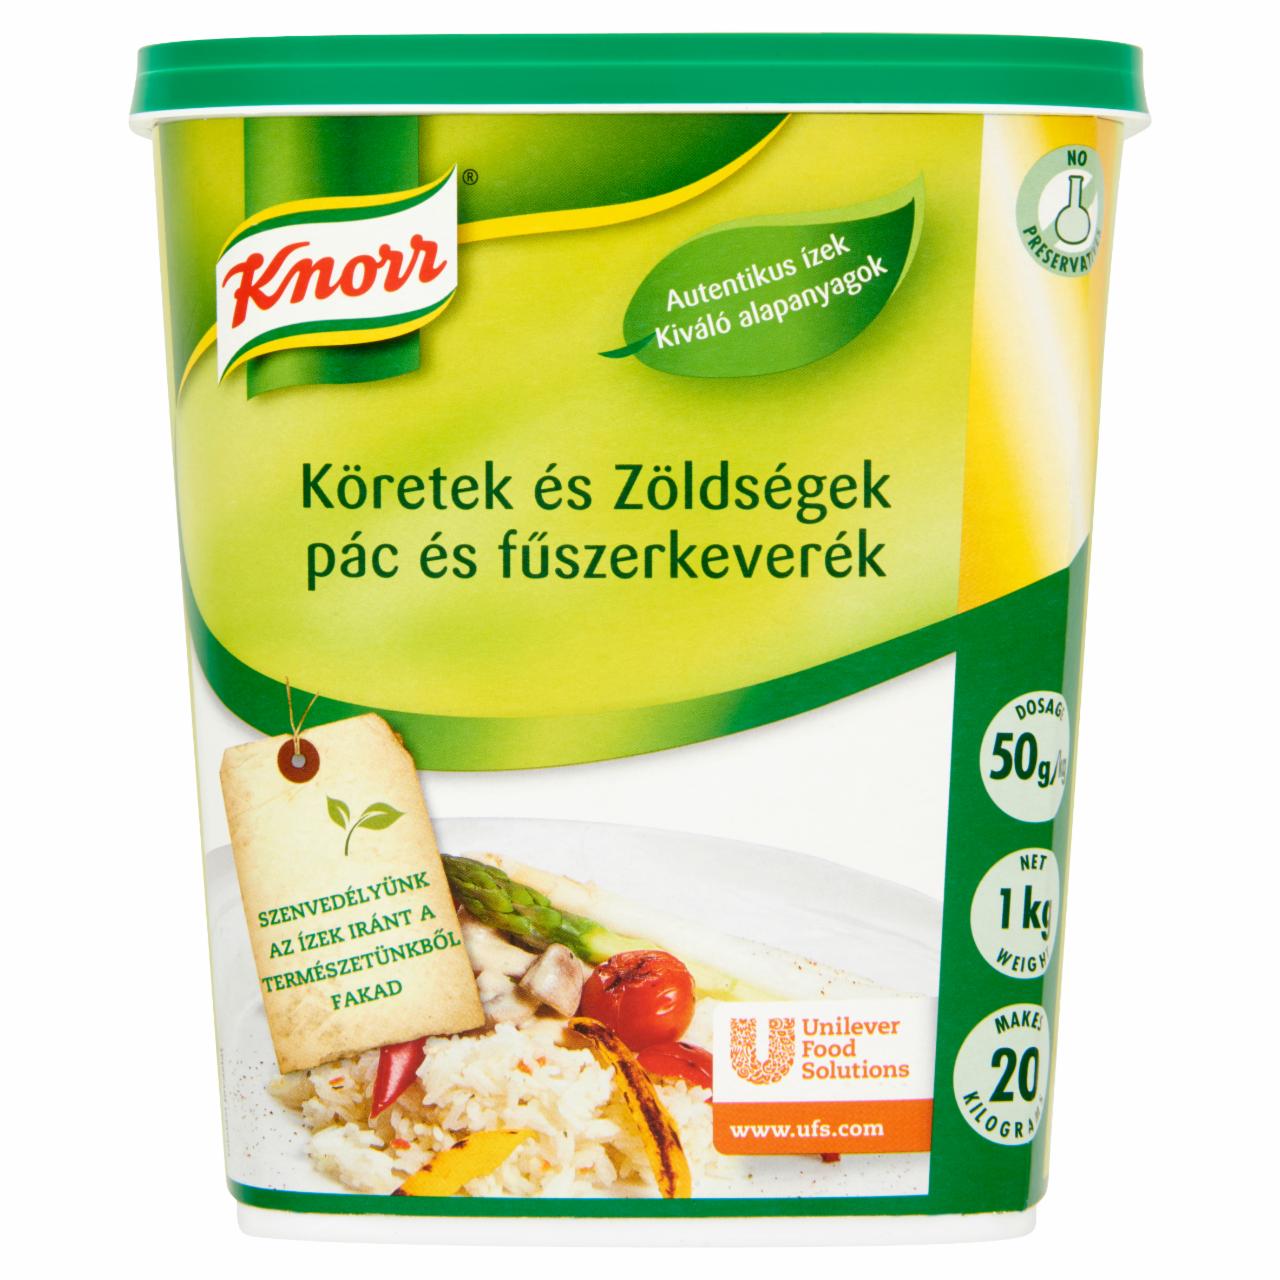 Photo - Knorr Köretek és Zöldségek Marinade and Spice Mix 1 kg